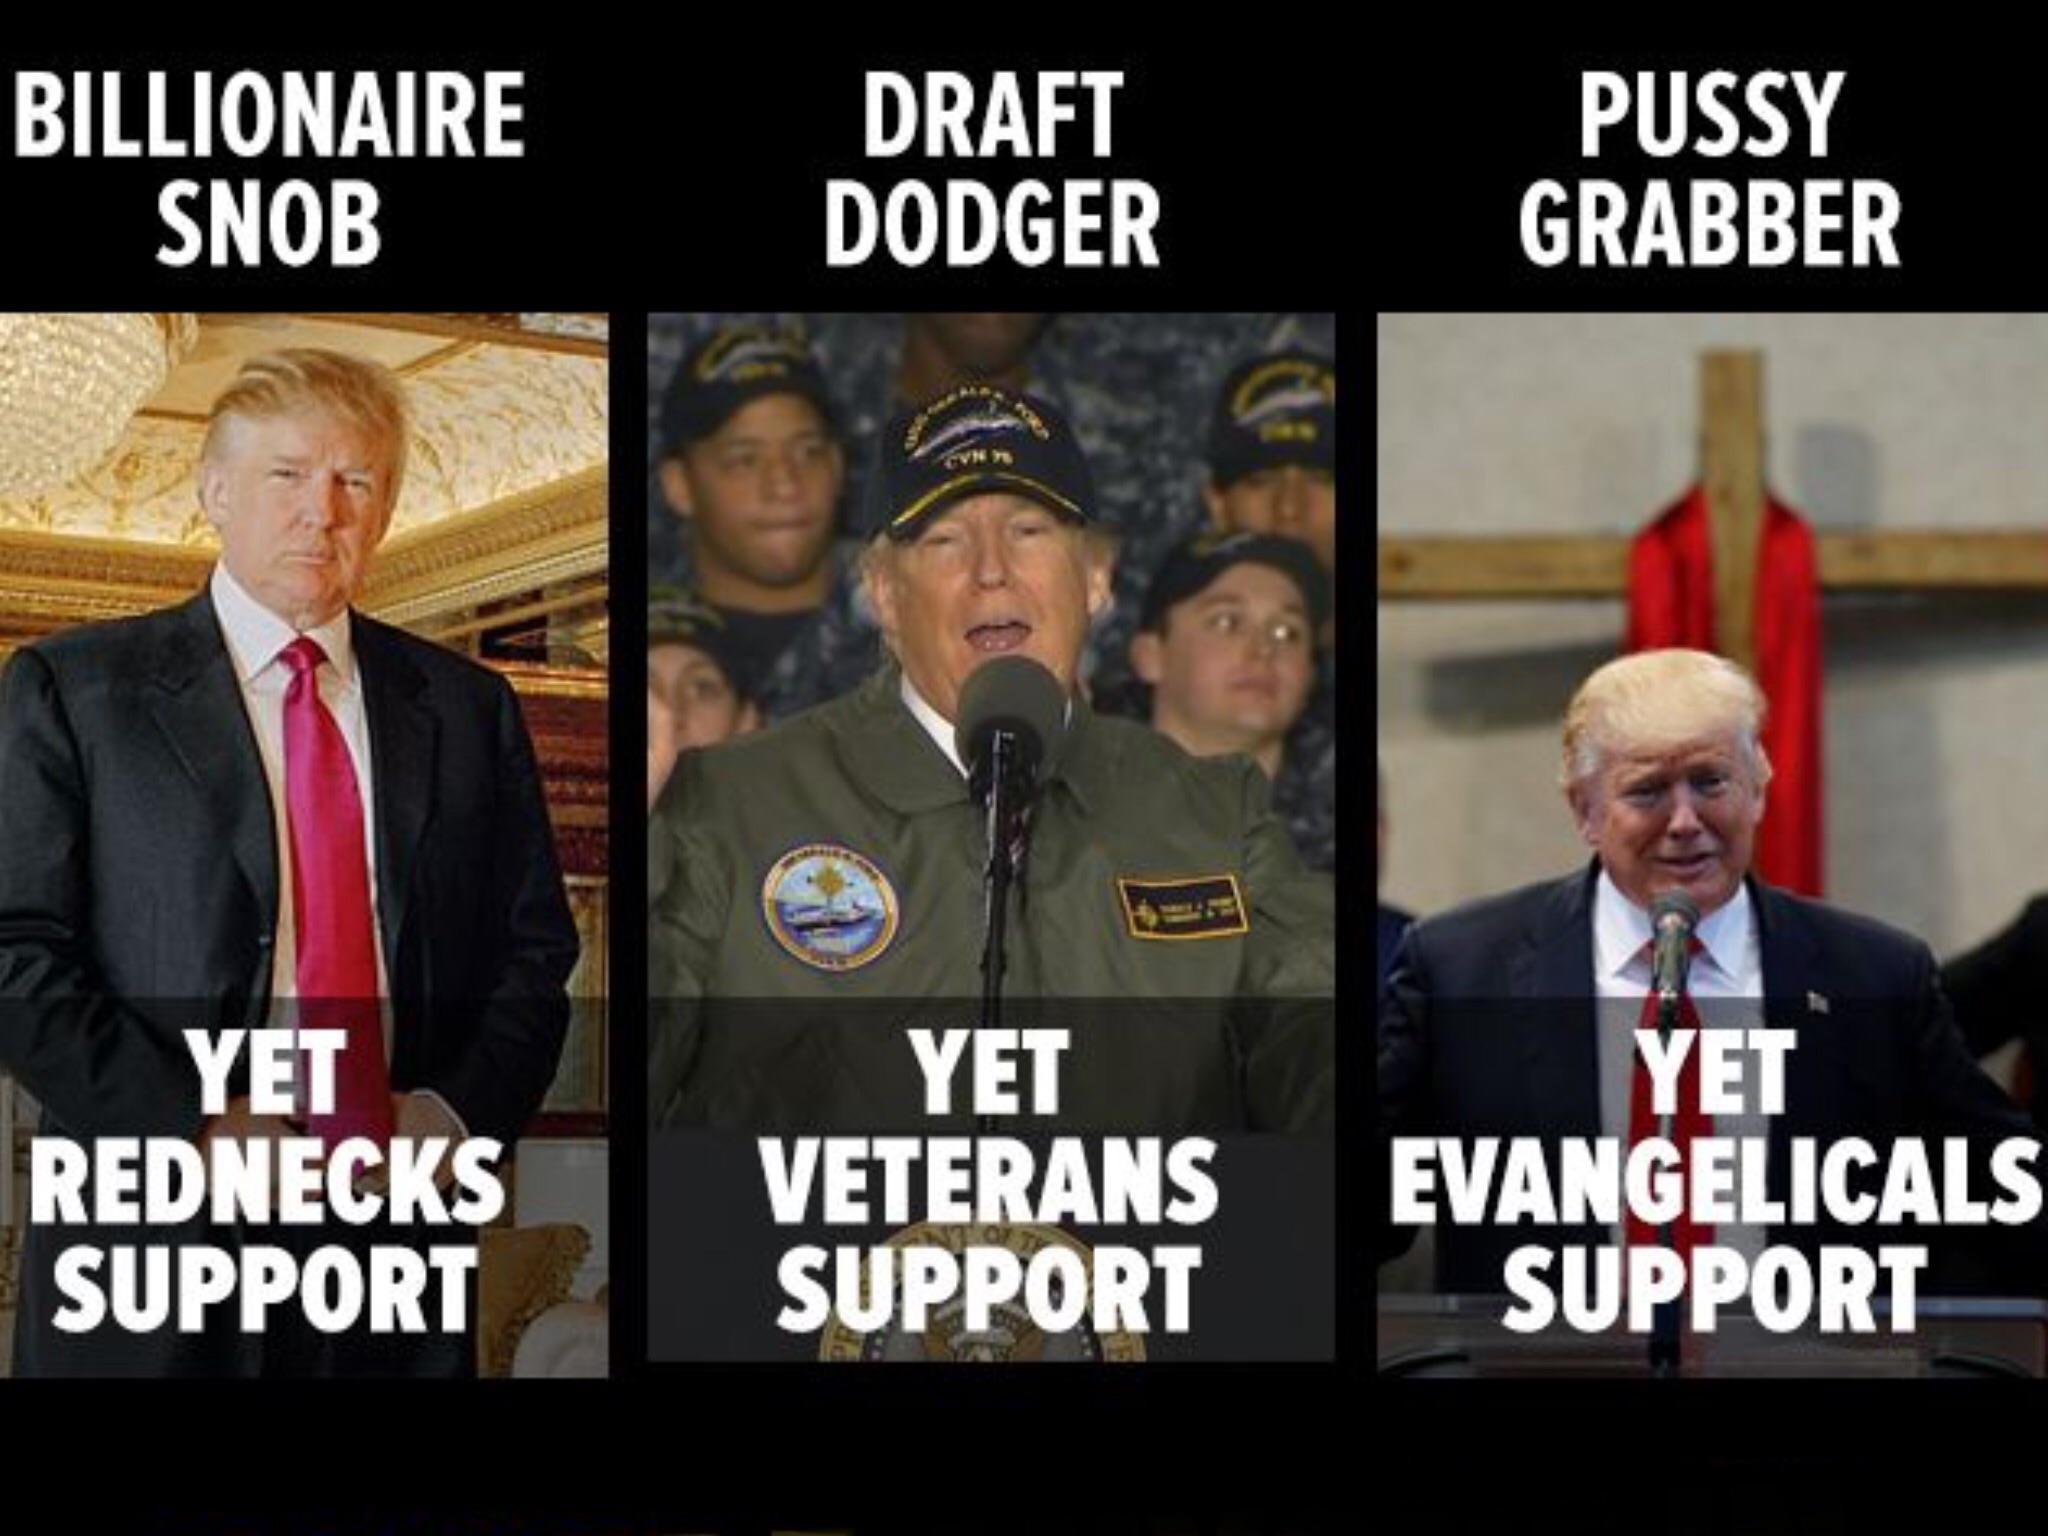 impeach trump memes - Billionaire Snob Draft Dodger Pussy Grabber Yet Rednecks Support Yet Veterans Support Yet Evangelicals Support